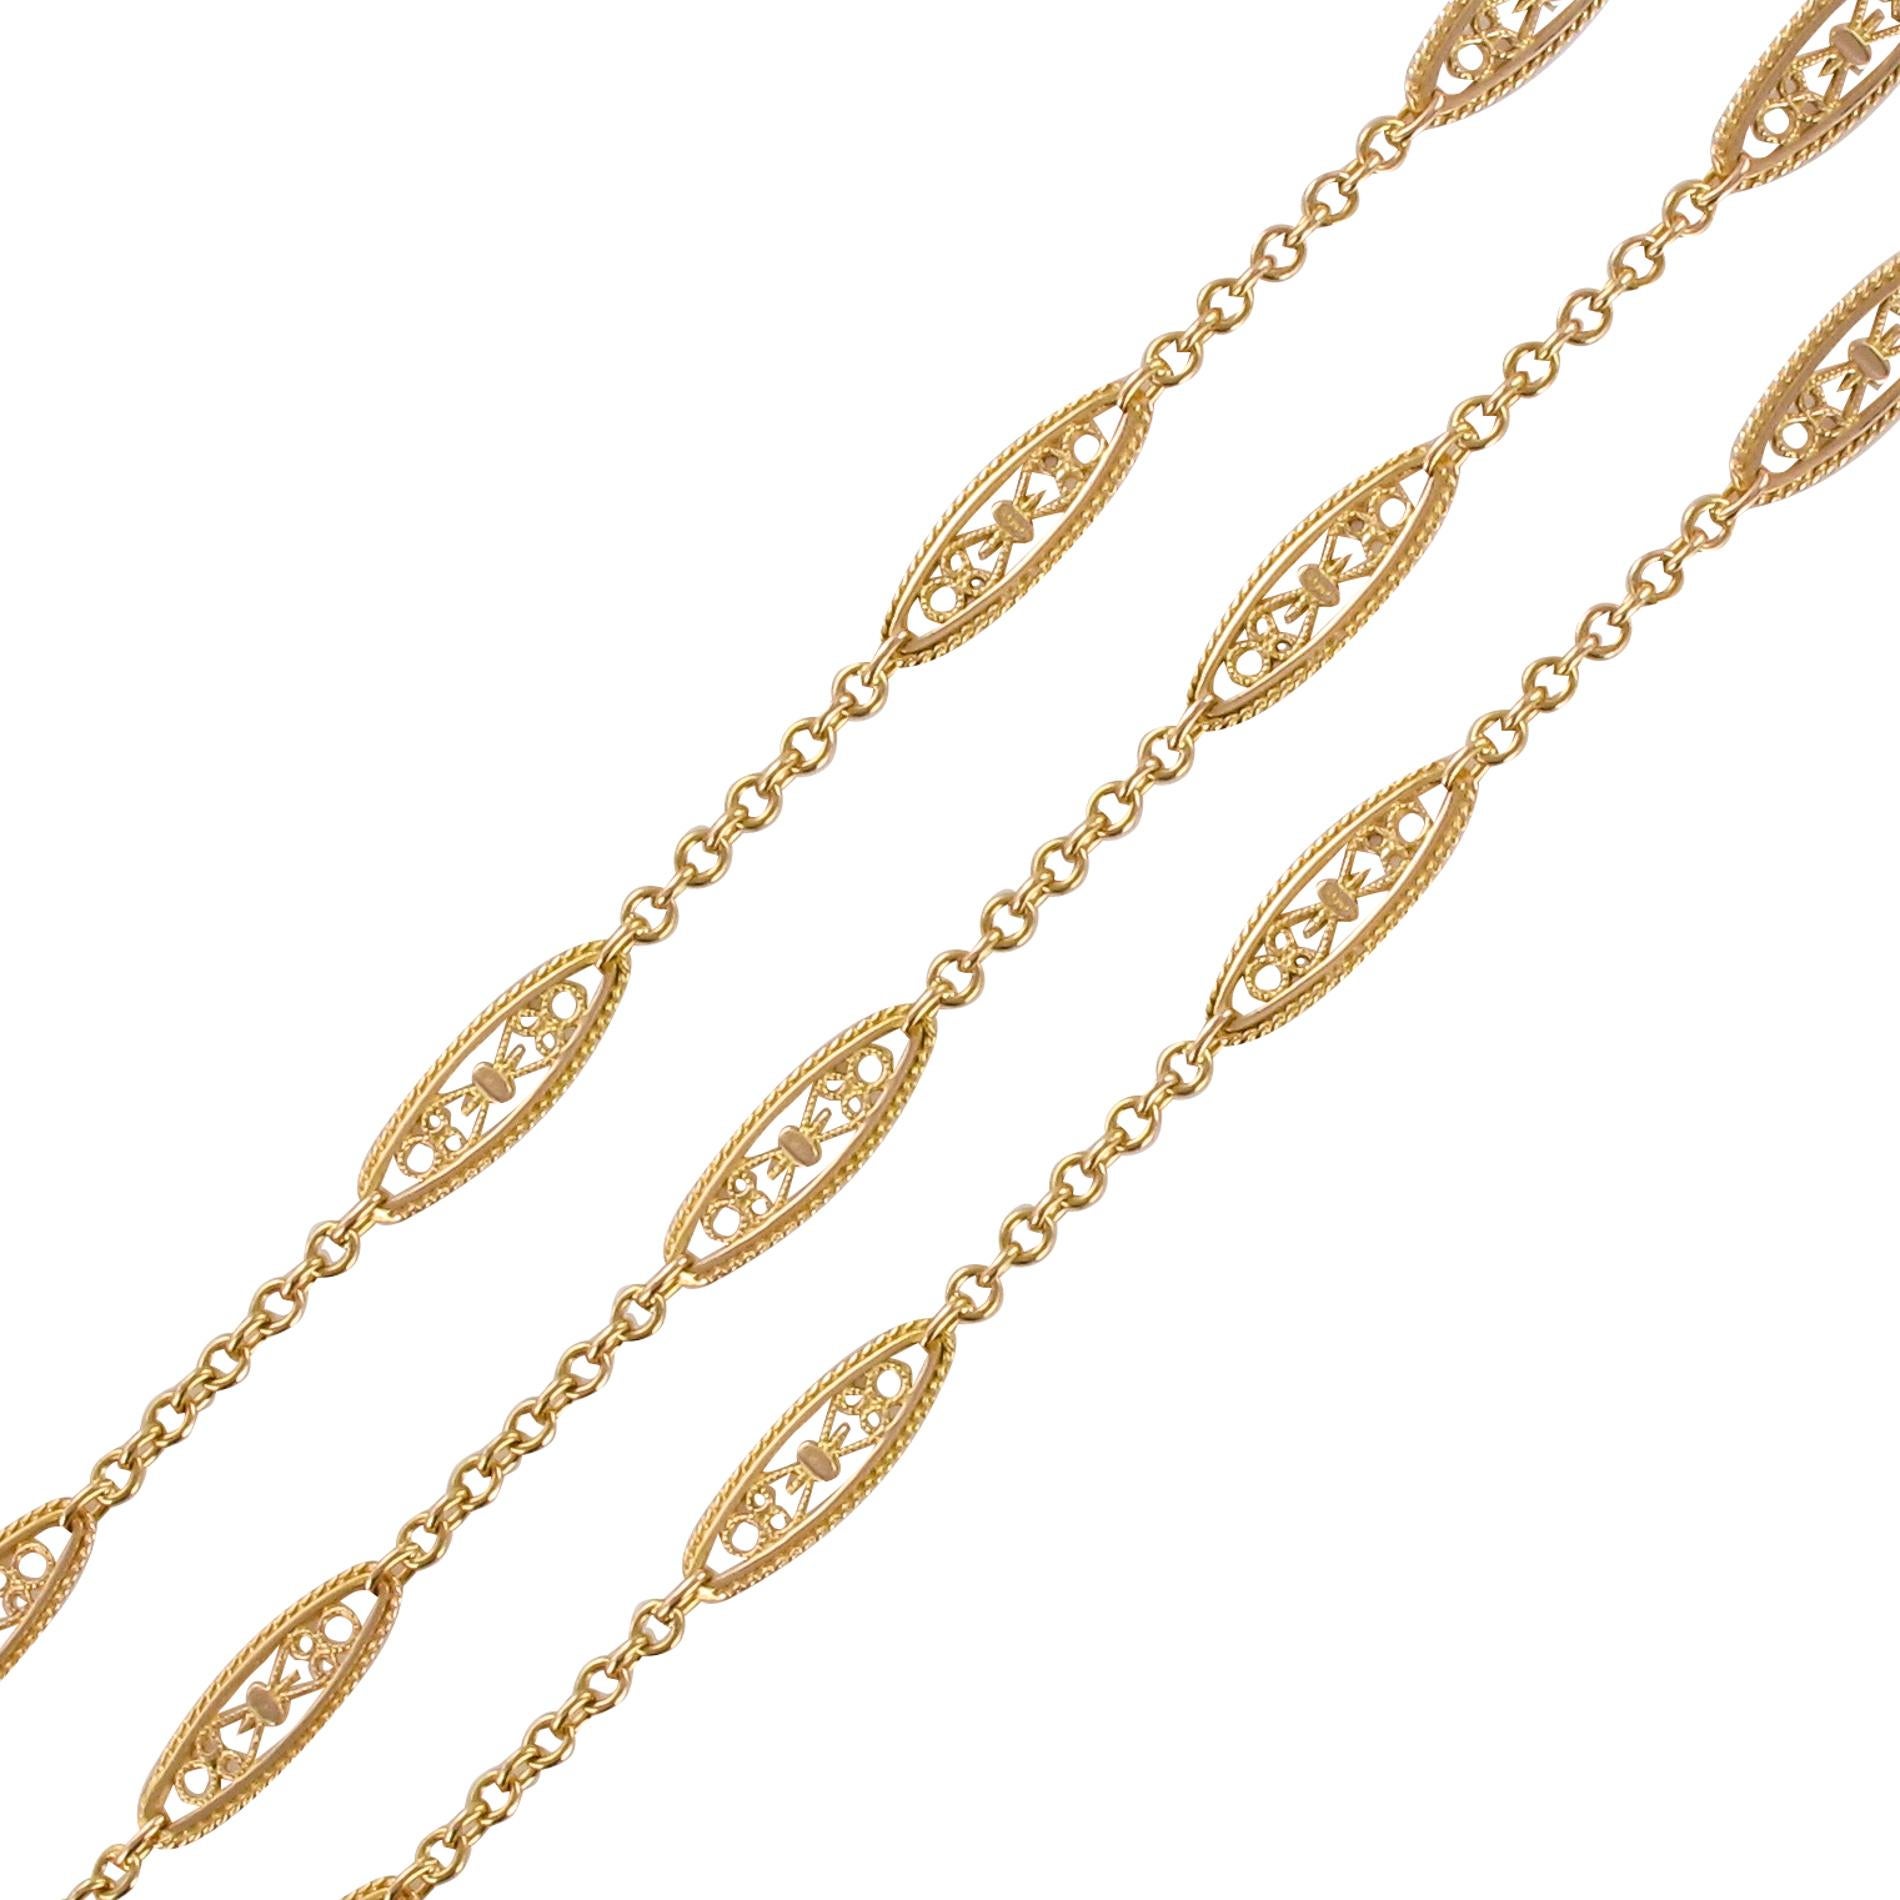 Halskette aus 18 Karat Roségold, Adlerkopfpunze.
Diese reizvolle, lange antike Halskette besteht aus einer Jaseronkette, die mit einem von Filigranen durchzogenen Schiffchenmuster versehen ist, das jeweils von einer kleinen Goldkordel eingefasst